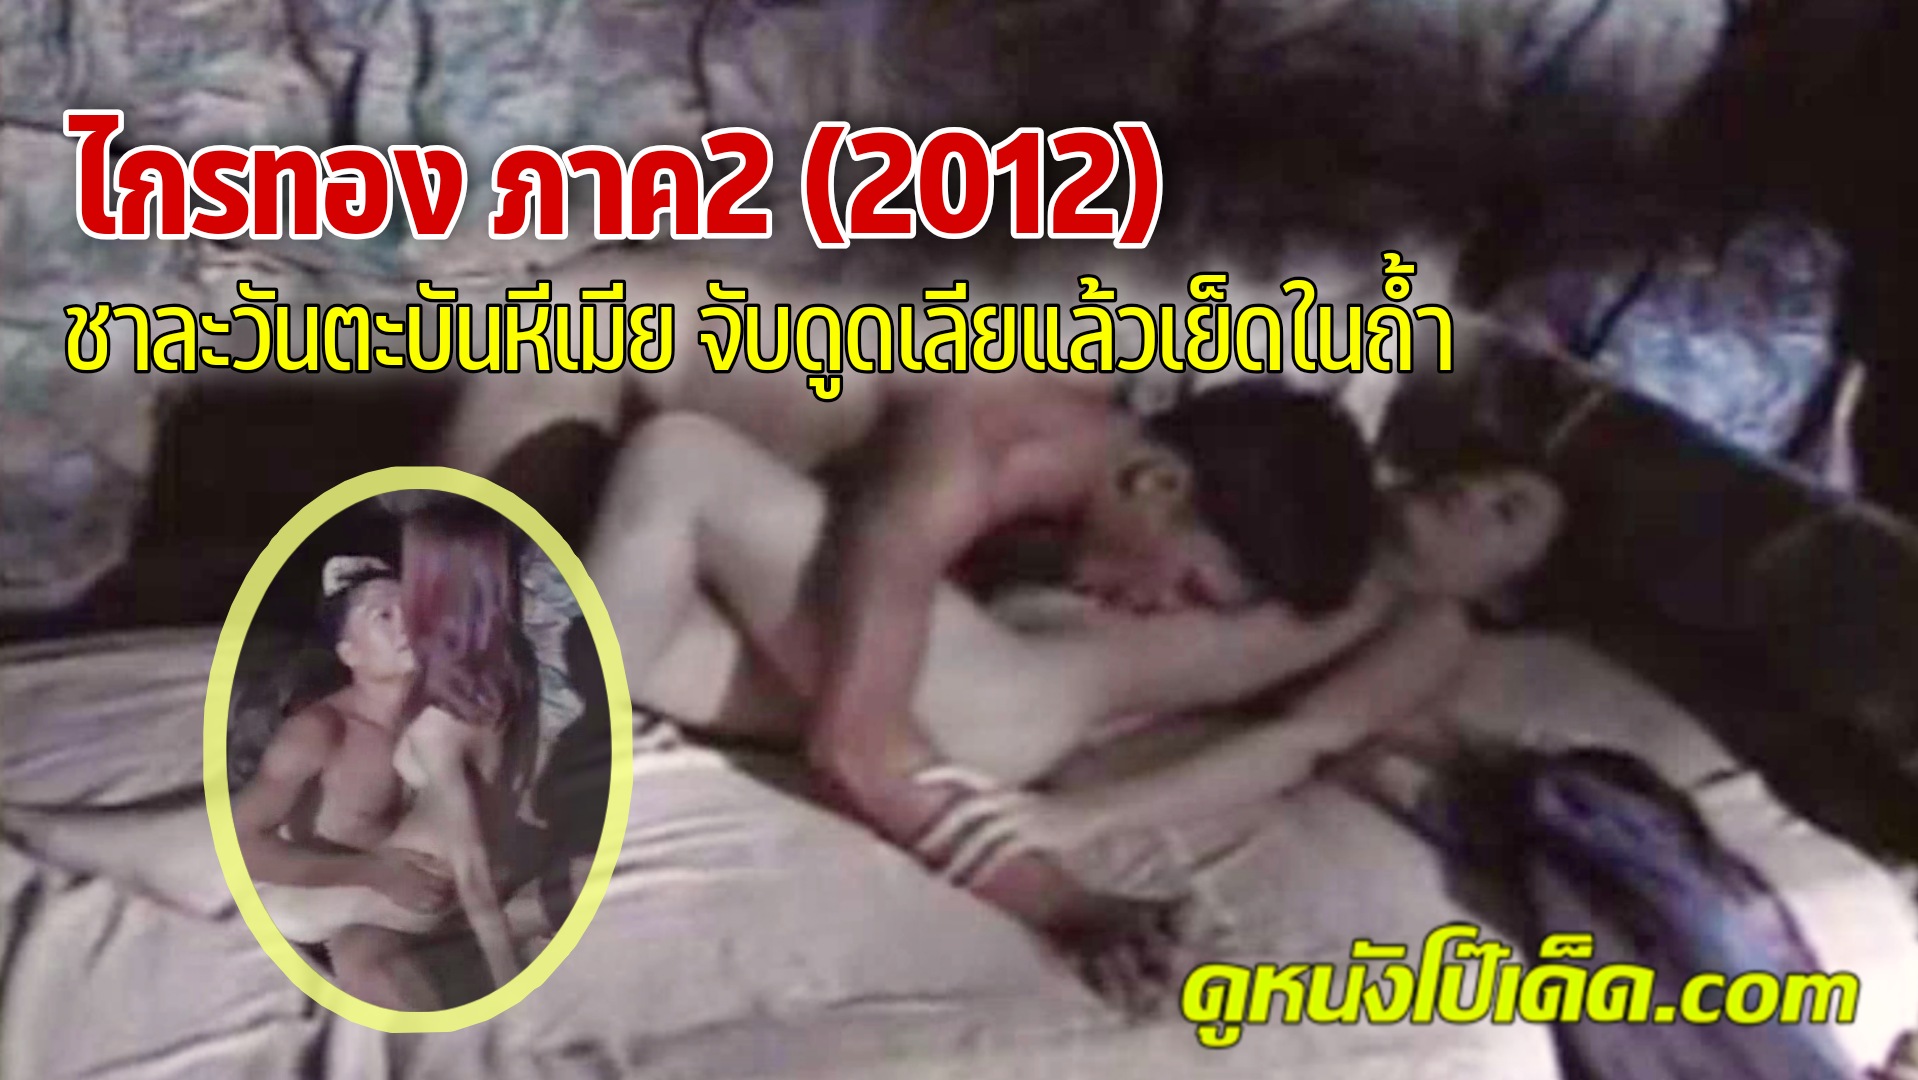 Pron ไกรทอง ภาค 2 กำเนิดตำนานหนังRไทย Krai Thong (2012) ตำนานที่ไม่มีวันตาย เย็ดมันส์เอาหีเข้มข้นกว่าเดิมแน่นนอน ตะเภาแก้วและตะเพาทอง แอบเล่นชู้พญาชาละวัน สวิงกิ้งพี่น้องน้ำแตกคาหี ไกรทองรู้เรื่องก็ไปเย็ดหีวิมาลาบ้าง ตะแคงเย็ดท่าแปลกโคตรเด็ด